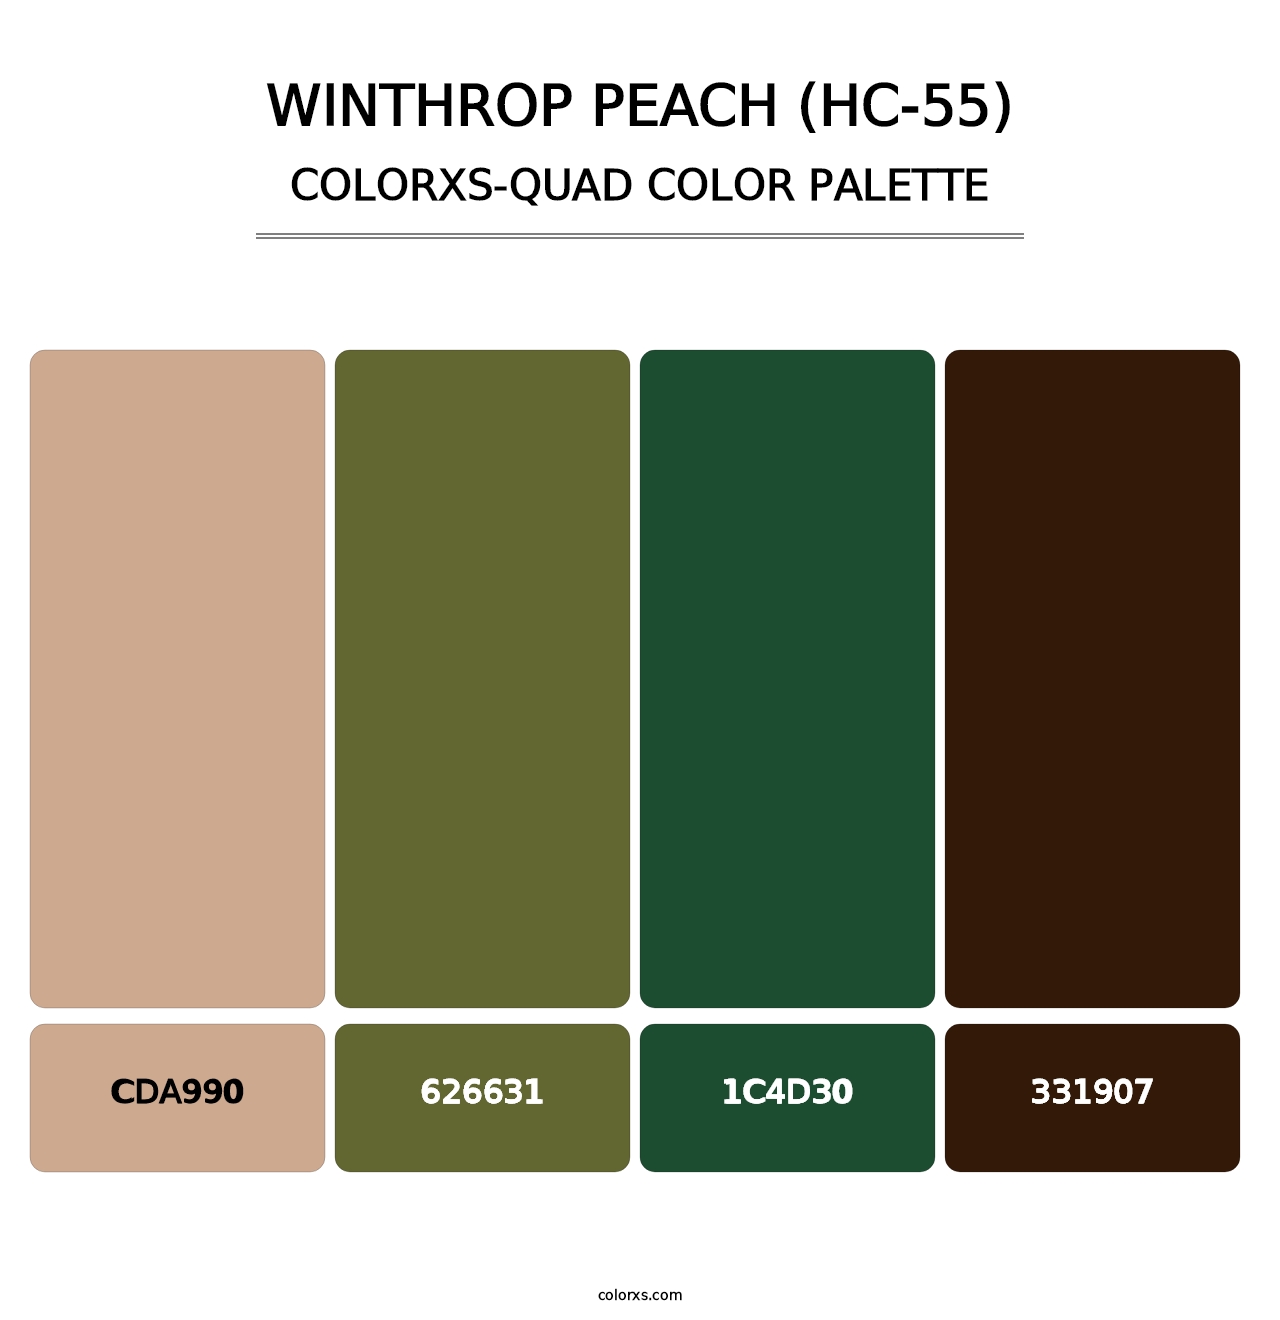 Winthrop Peach (HC-55) - Colorxs Quad Palette